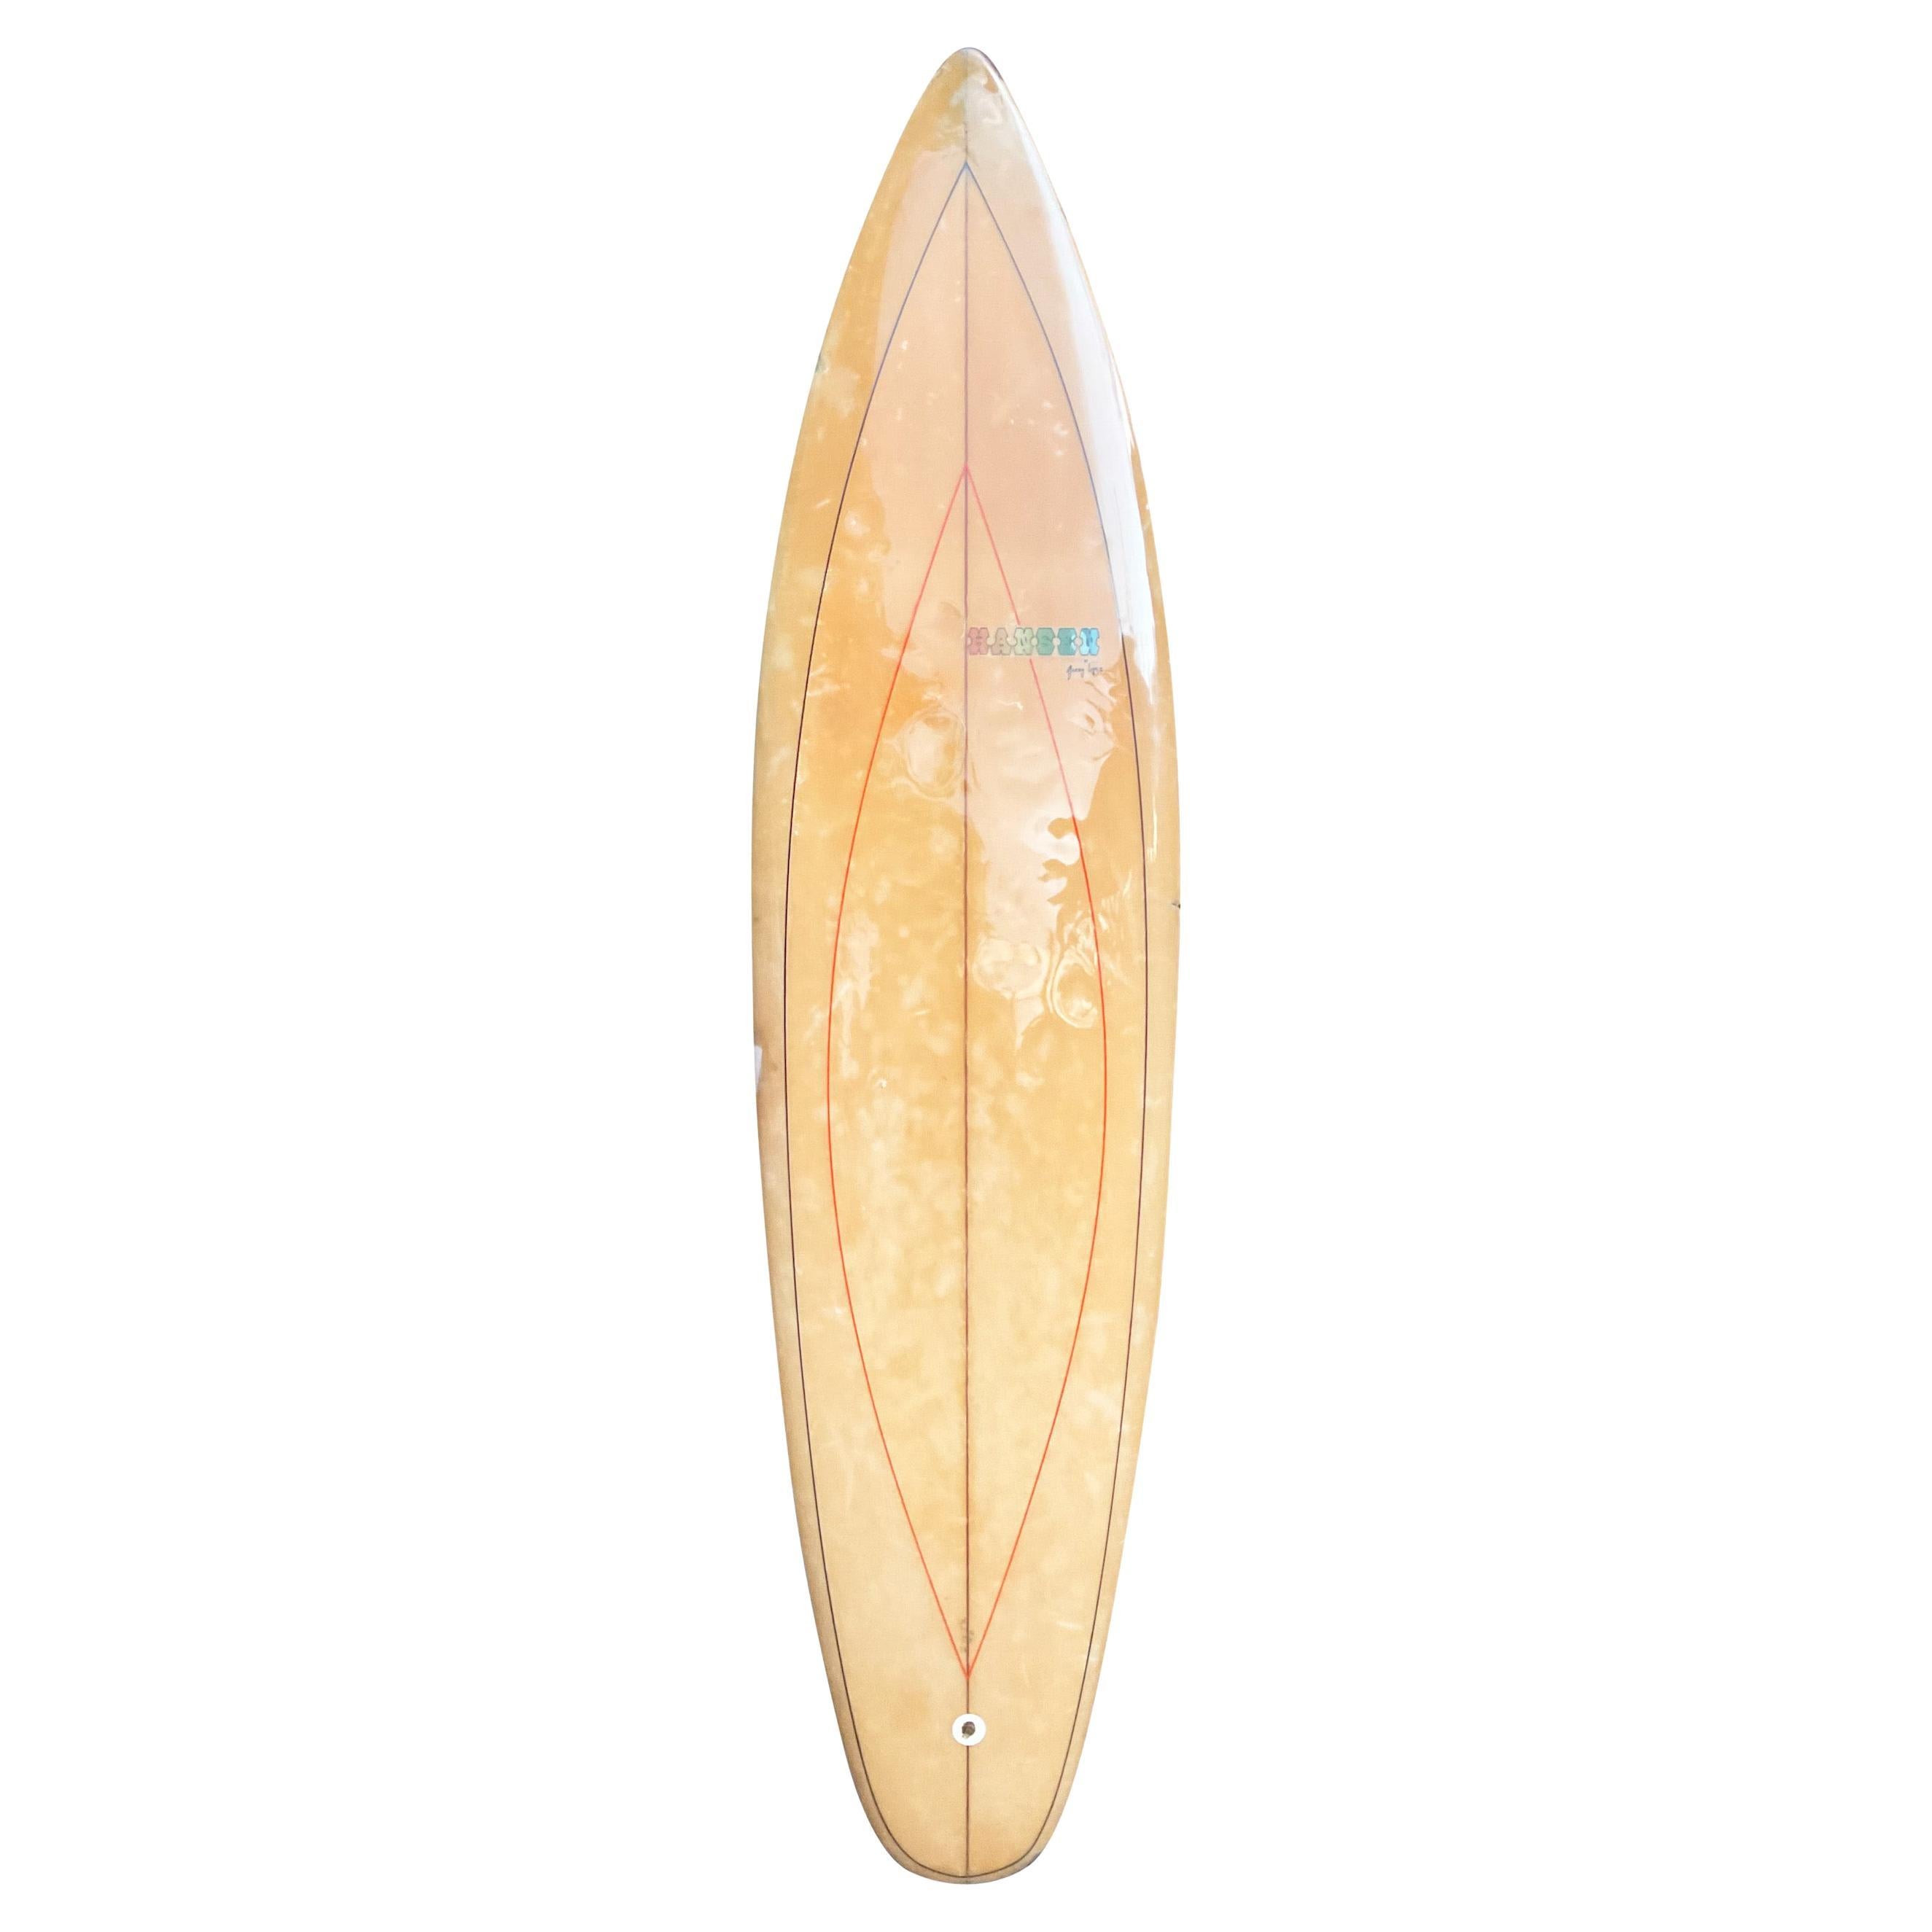 Planches de surf vintage Gerry Lopez par Hansen Surfboards des années 1960